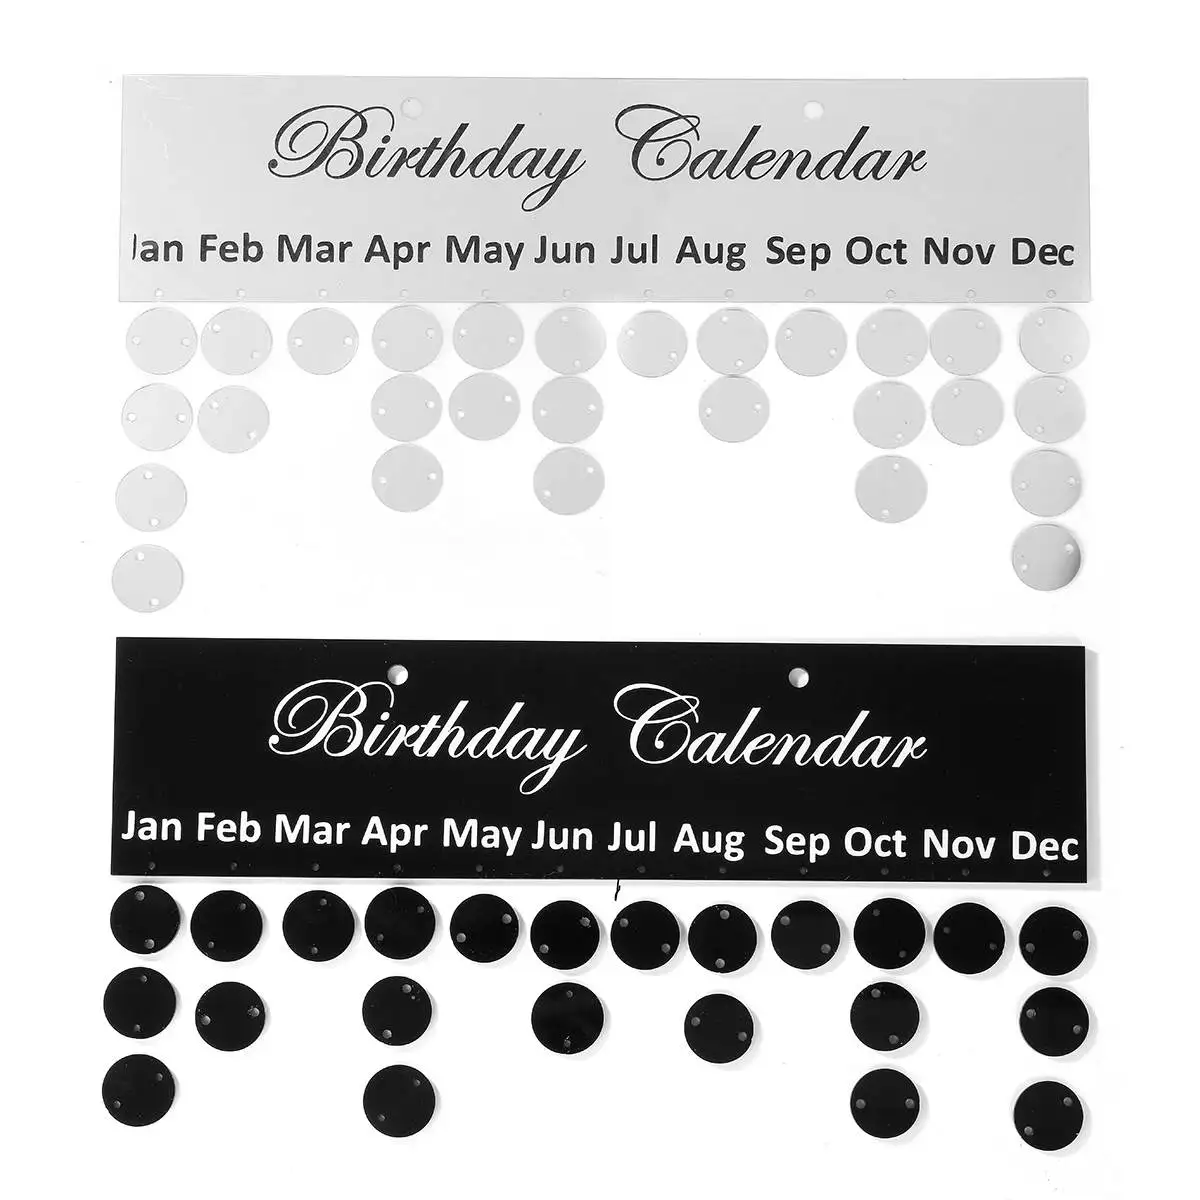 Kicute 1 шт. серебристый, черный день рождения доска-календарь DIY Семья на день рождения календарь особенные даты Планерная доска подвесной Декор подарочный набор